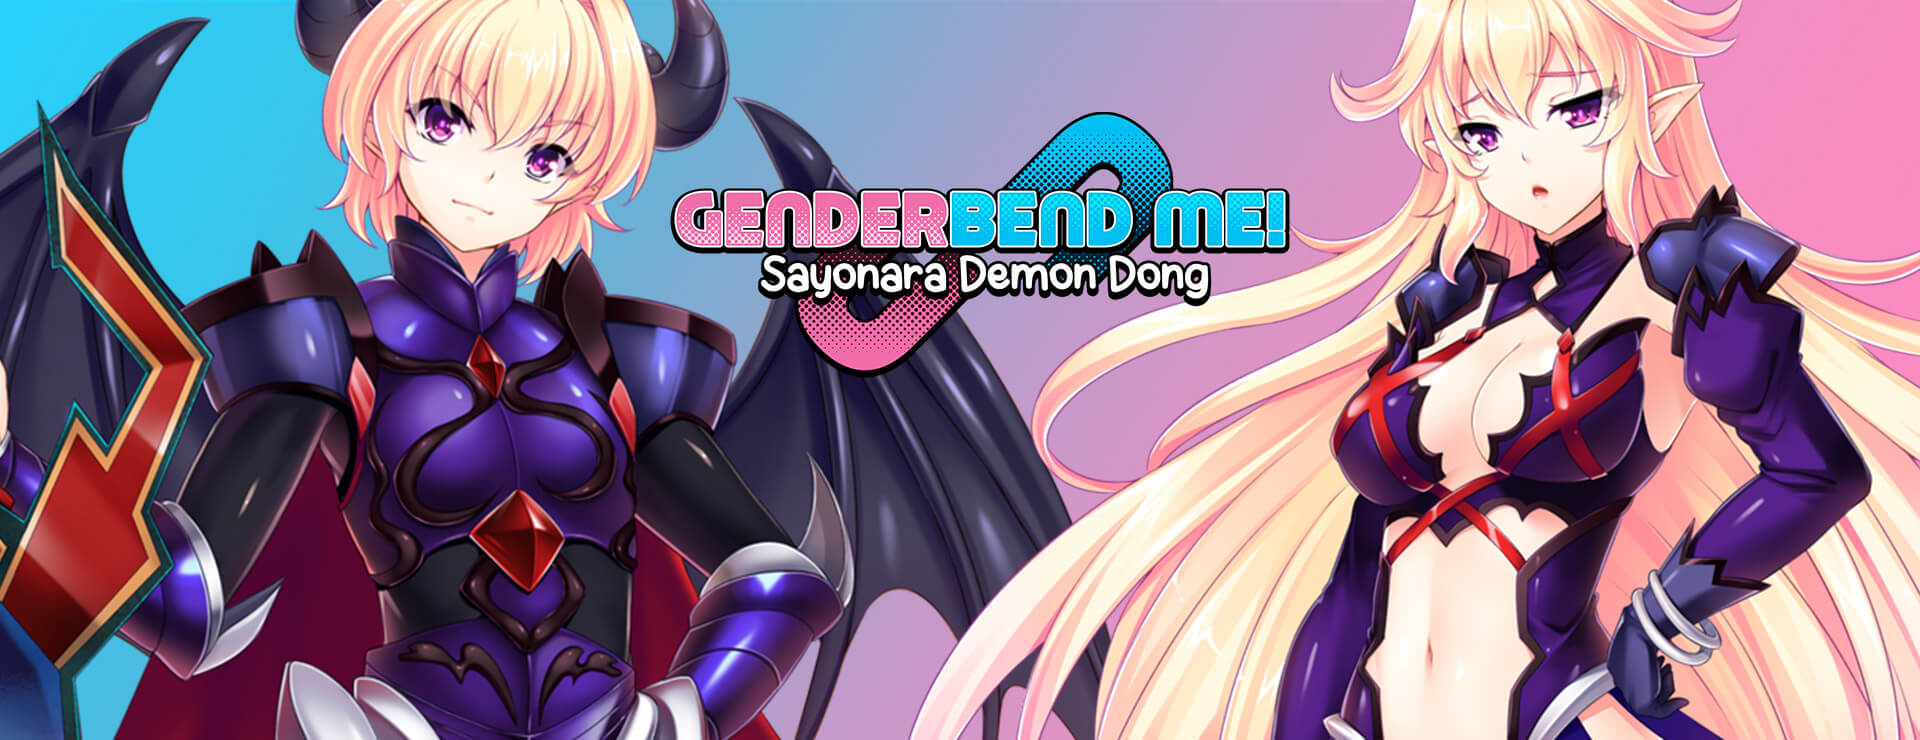 Genderbend Me! Sayonara Demon Dong - ビジュアルノベル ゲーム